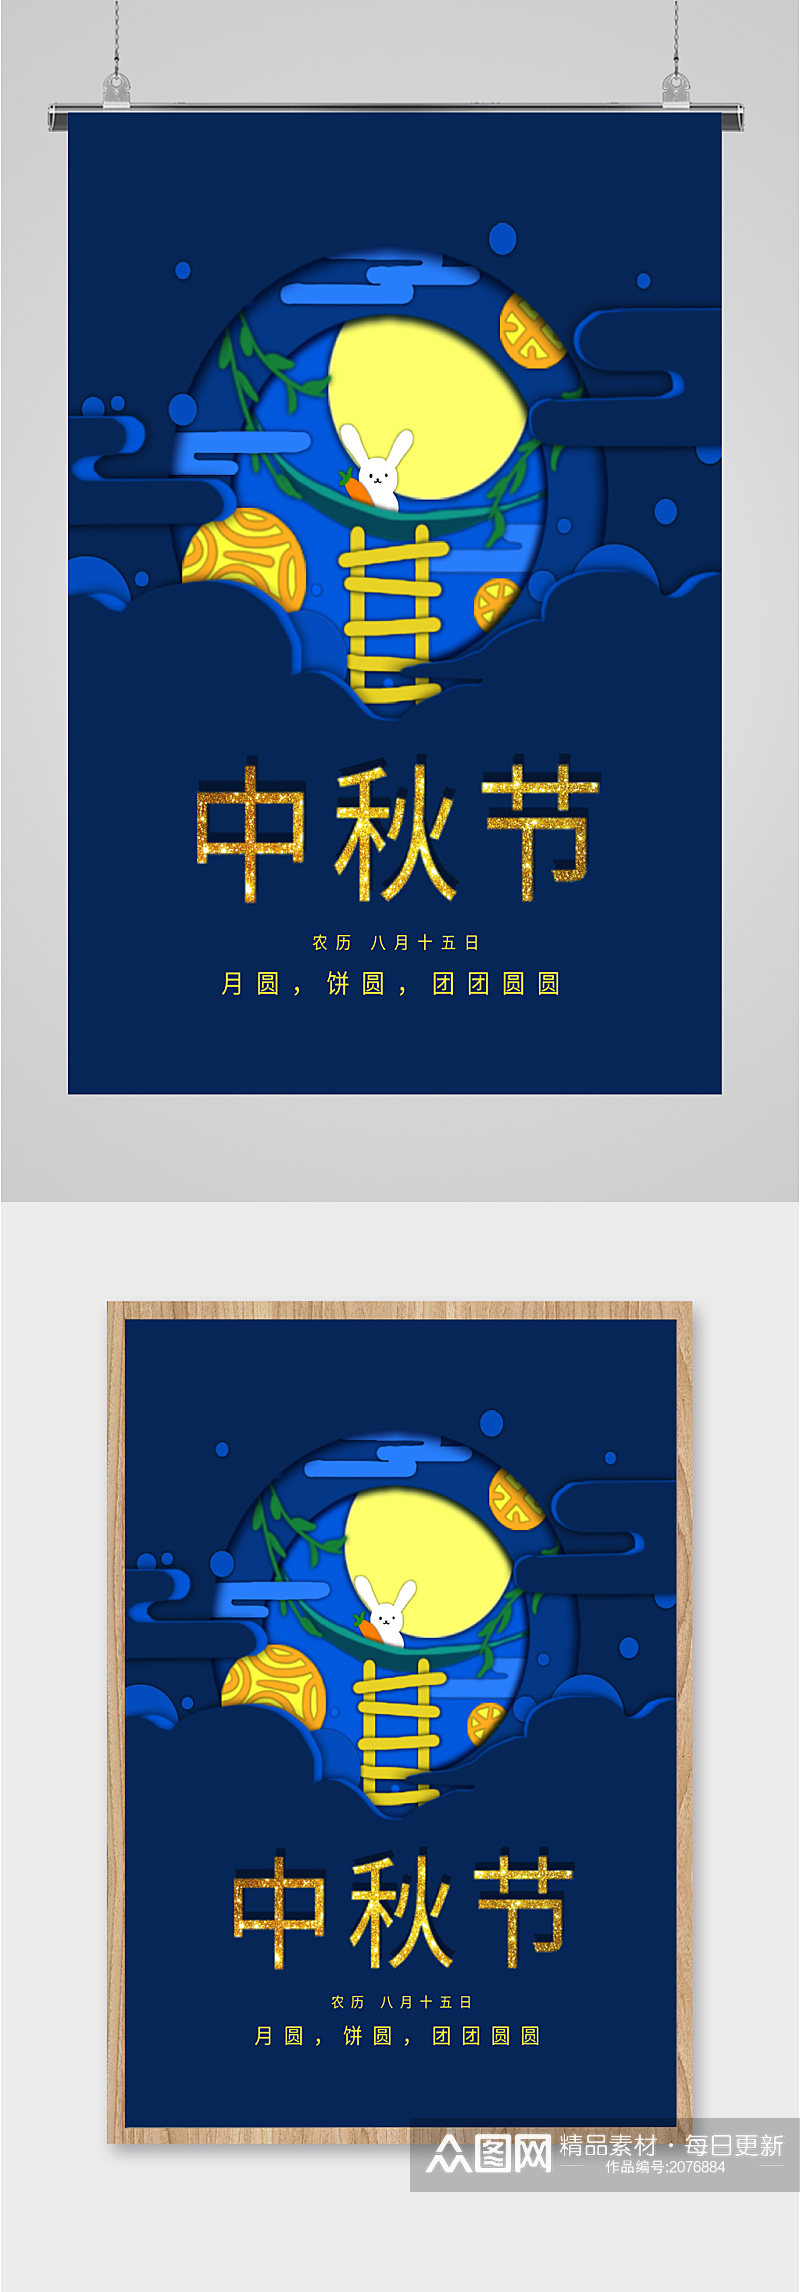 八月十五中秋节节日海报素材